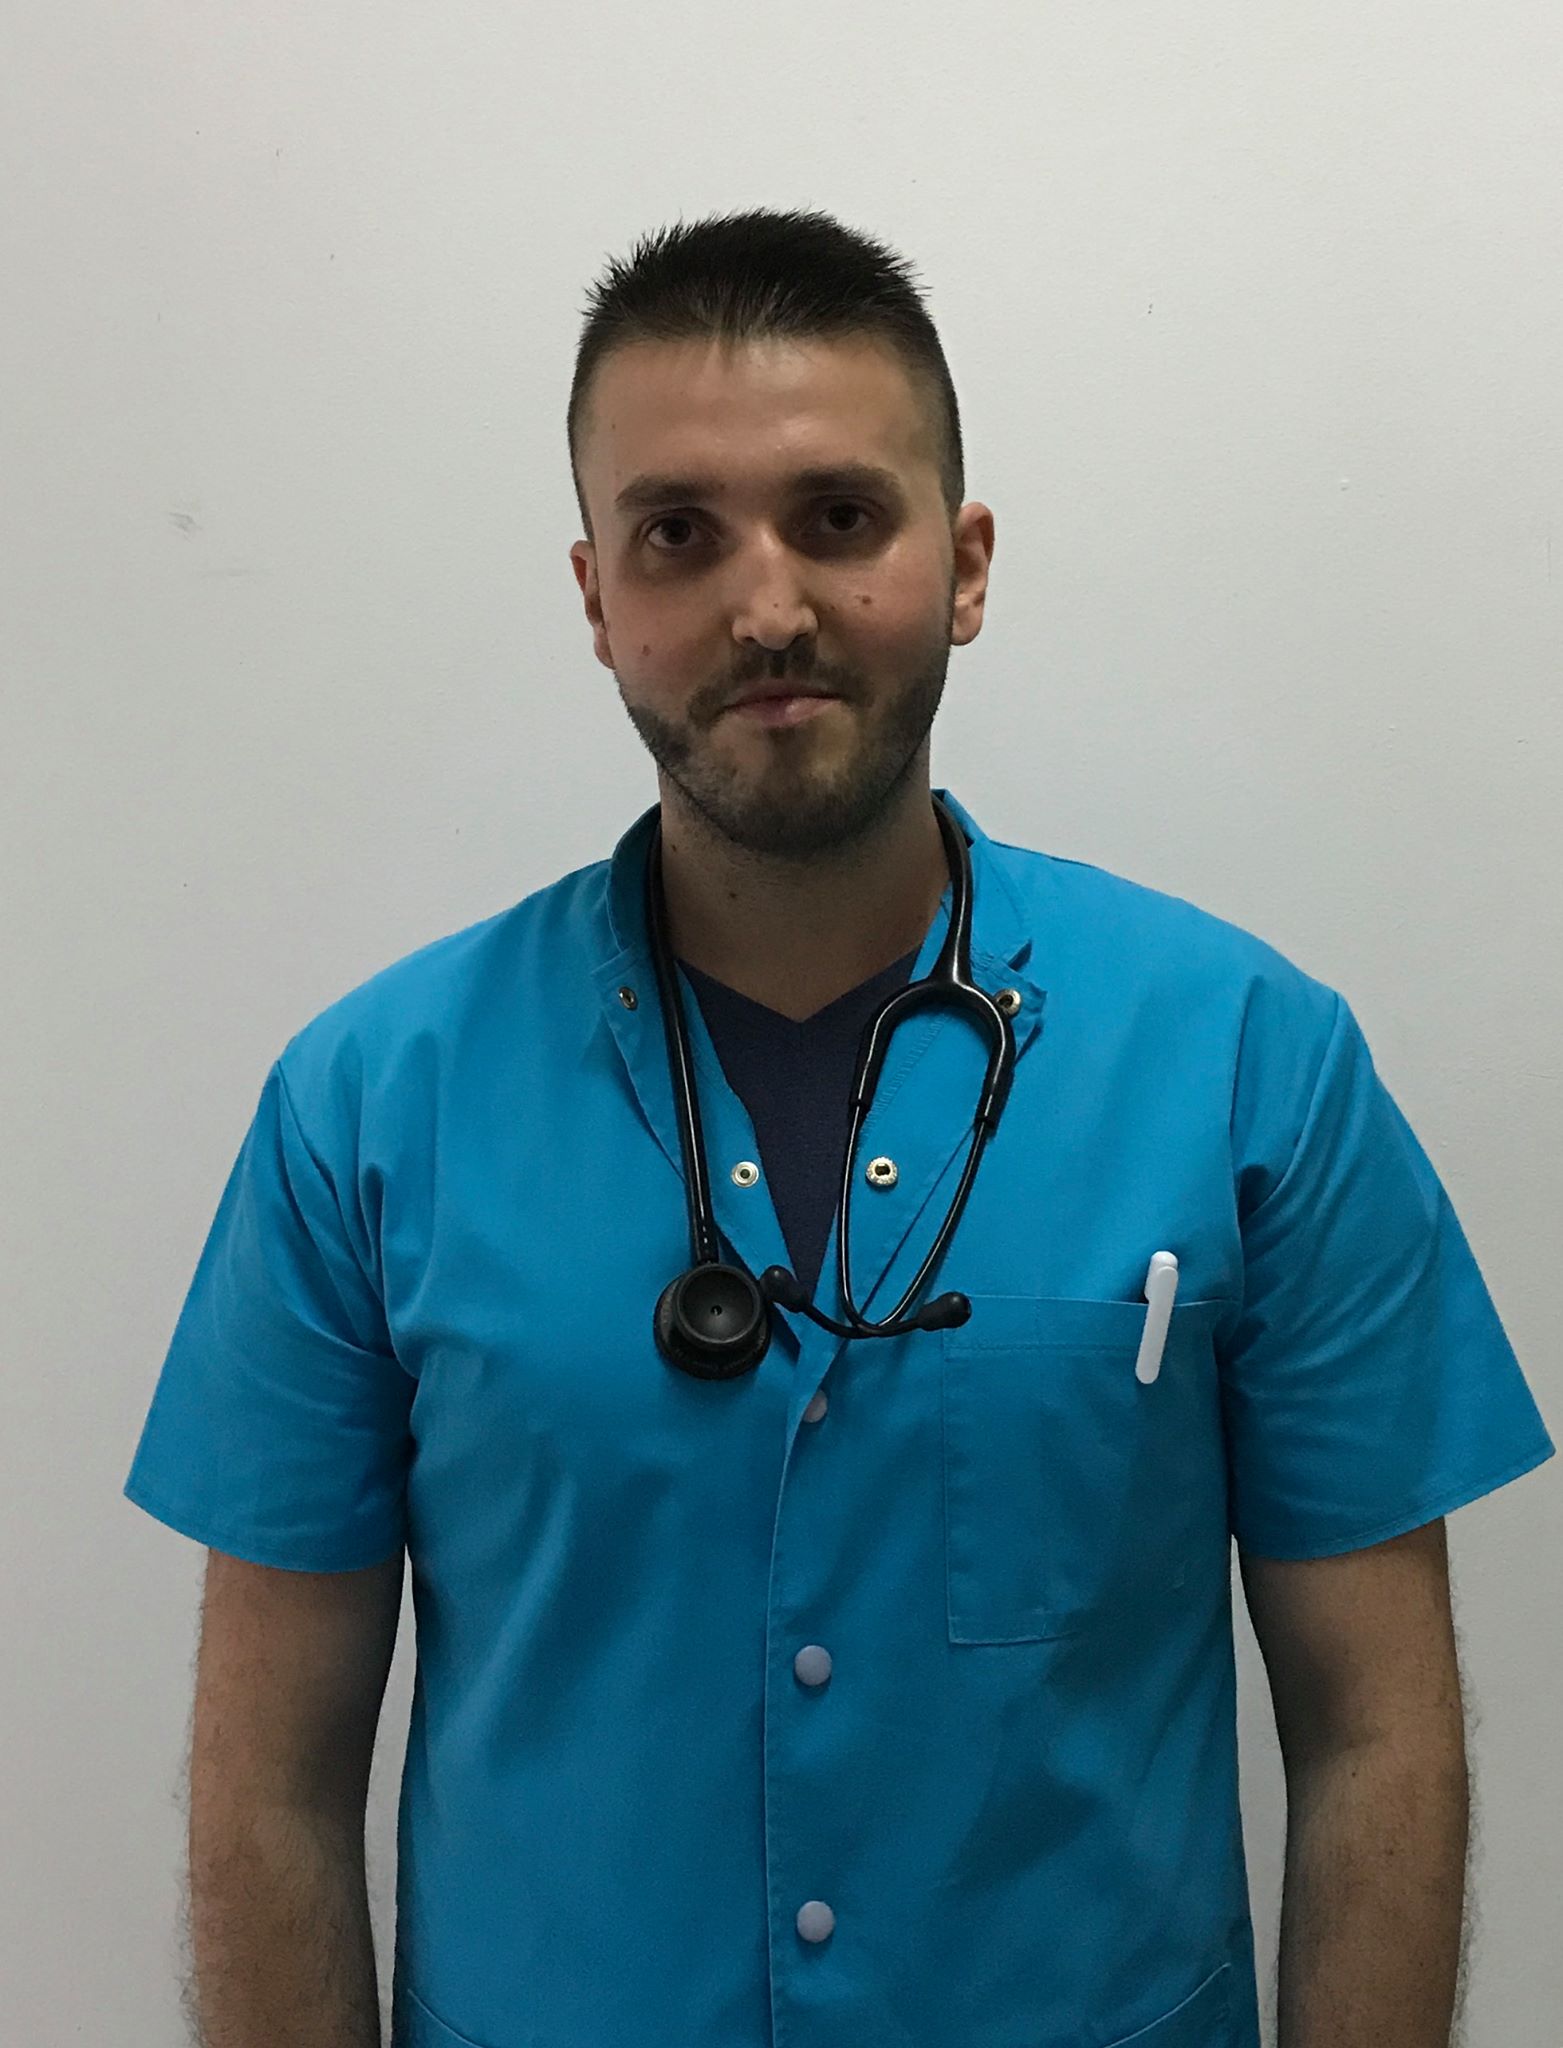 Interviu cu Ion Andrei, medic rezident: “Am incercat sa nu am asteptari prea mari, insa cu toate neajunsurile din sistem nu regret niciun moment ca am ales pneumologia.”